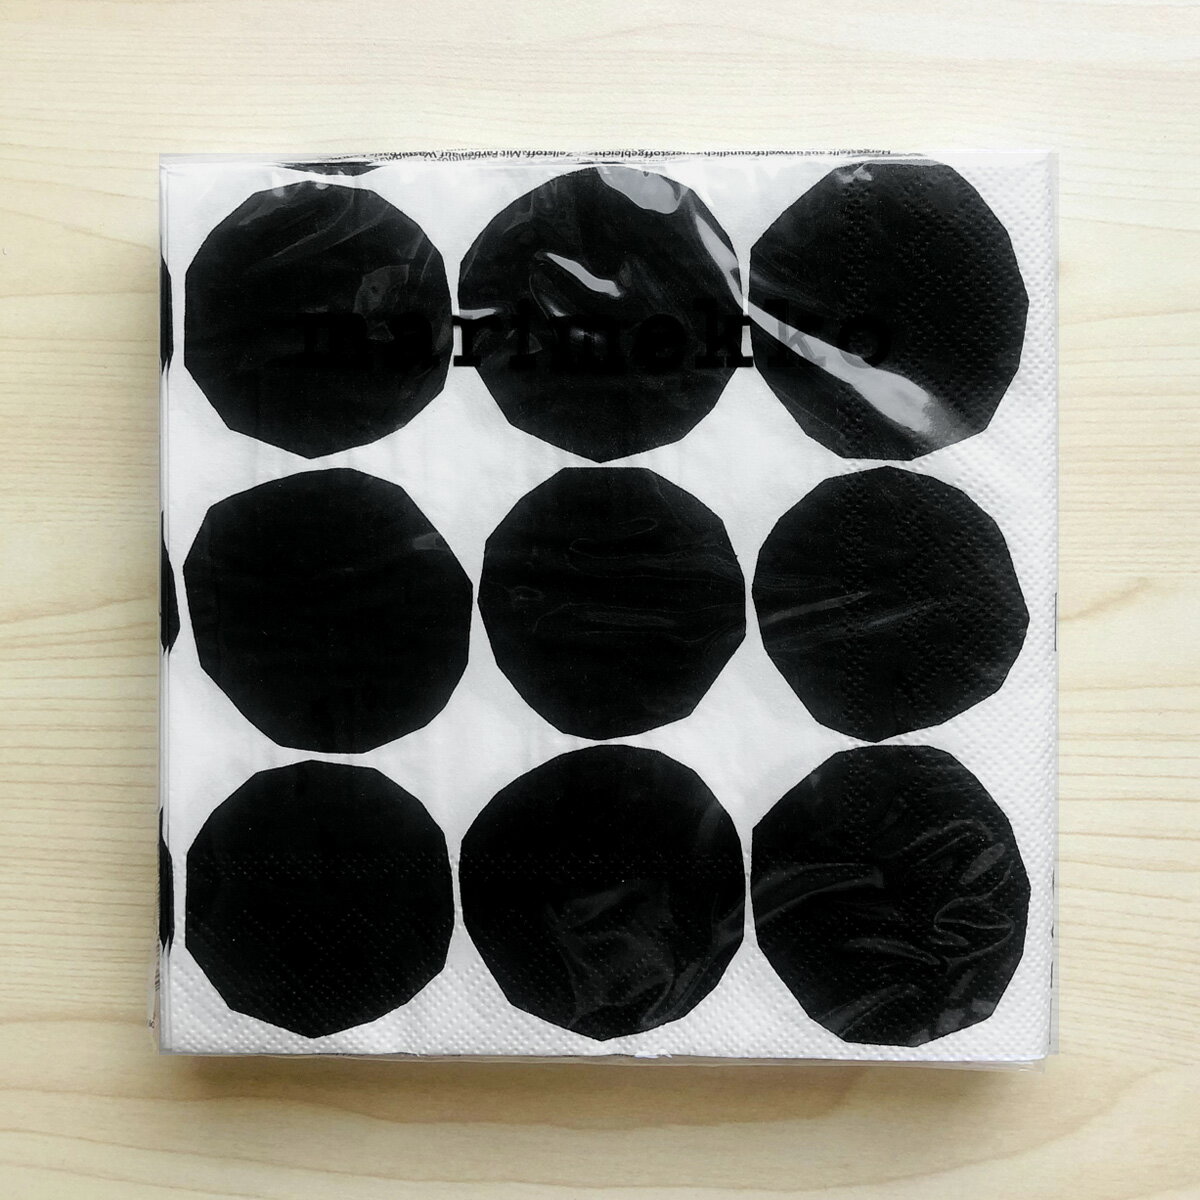 マリメッコ marimekko ペーパーナプキン 紙ナプキン ランチサイズ 20枚 606479 KIVET キヴェット black white ホワイト+ブラック